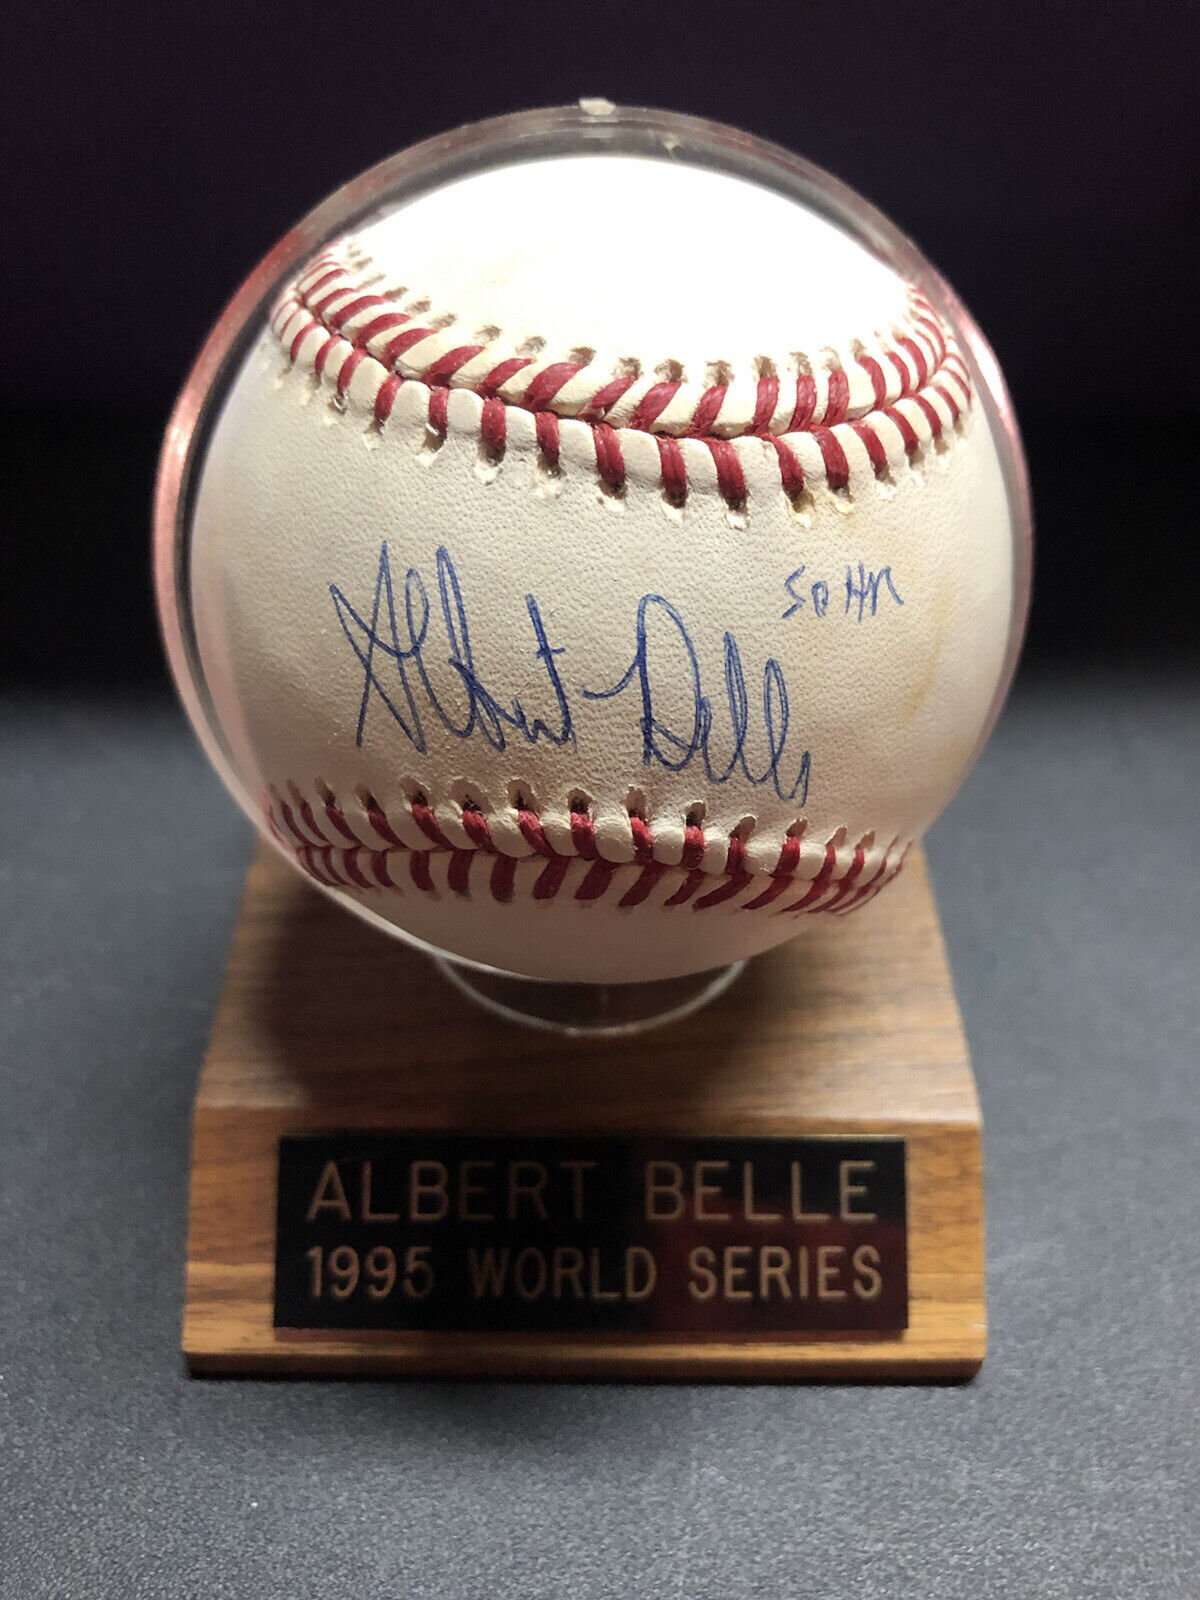 Albert Belle Autographed Baseball - 1995 Work Series Official Ball - 50 HR